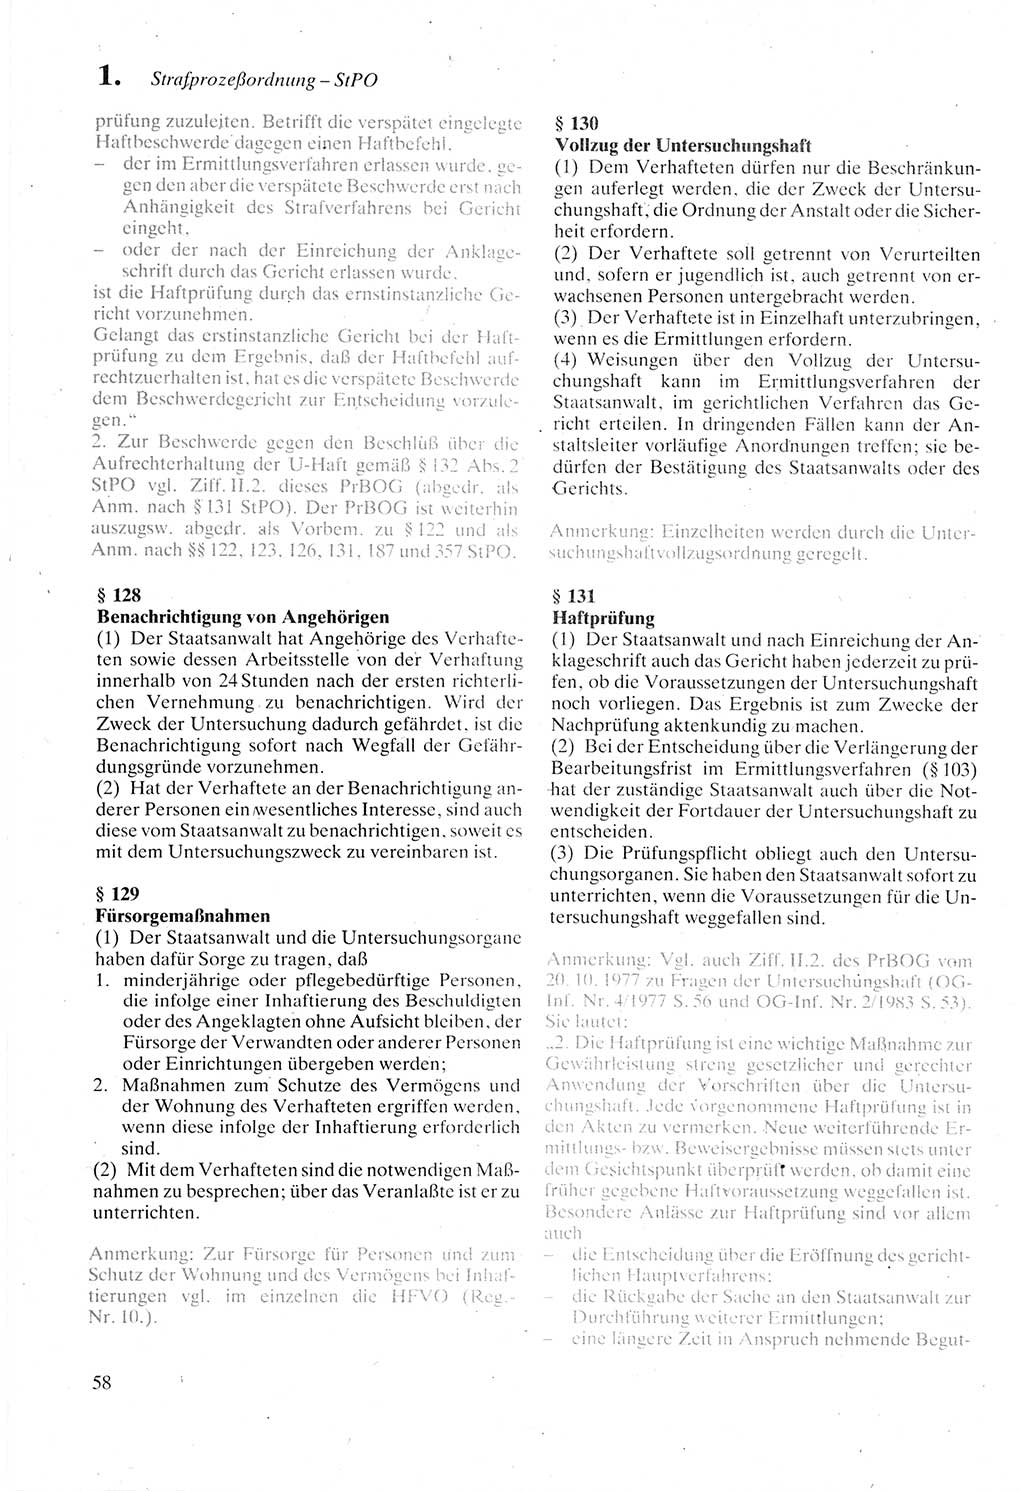 Strafprozeßordnung (StPO) der Deutschen Demokratischen Republik (DDR) sowie angrenzende Gesetze und Bestimmungen 1987, Seite 58 (StPO DDR Ges. Best. 1987, S. 58)